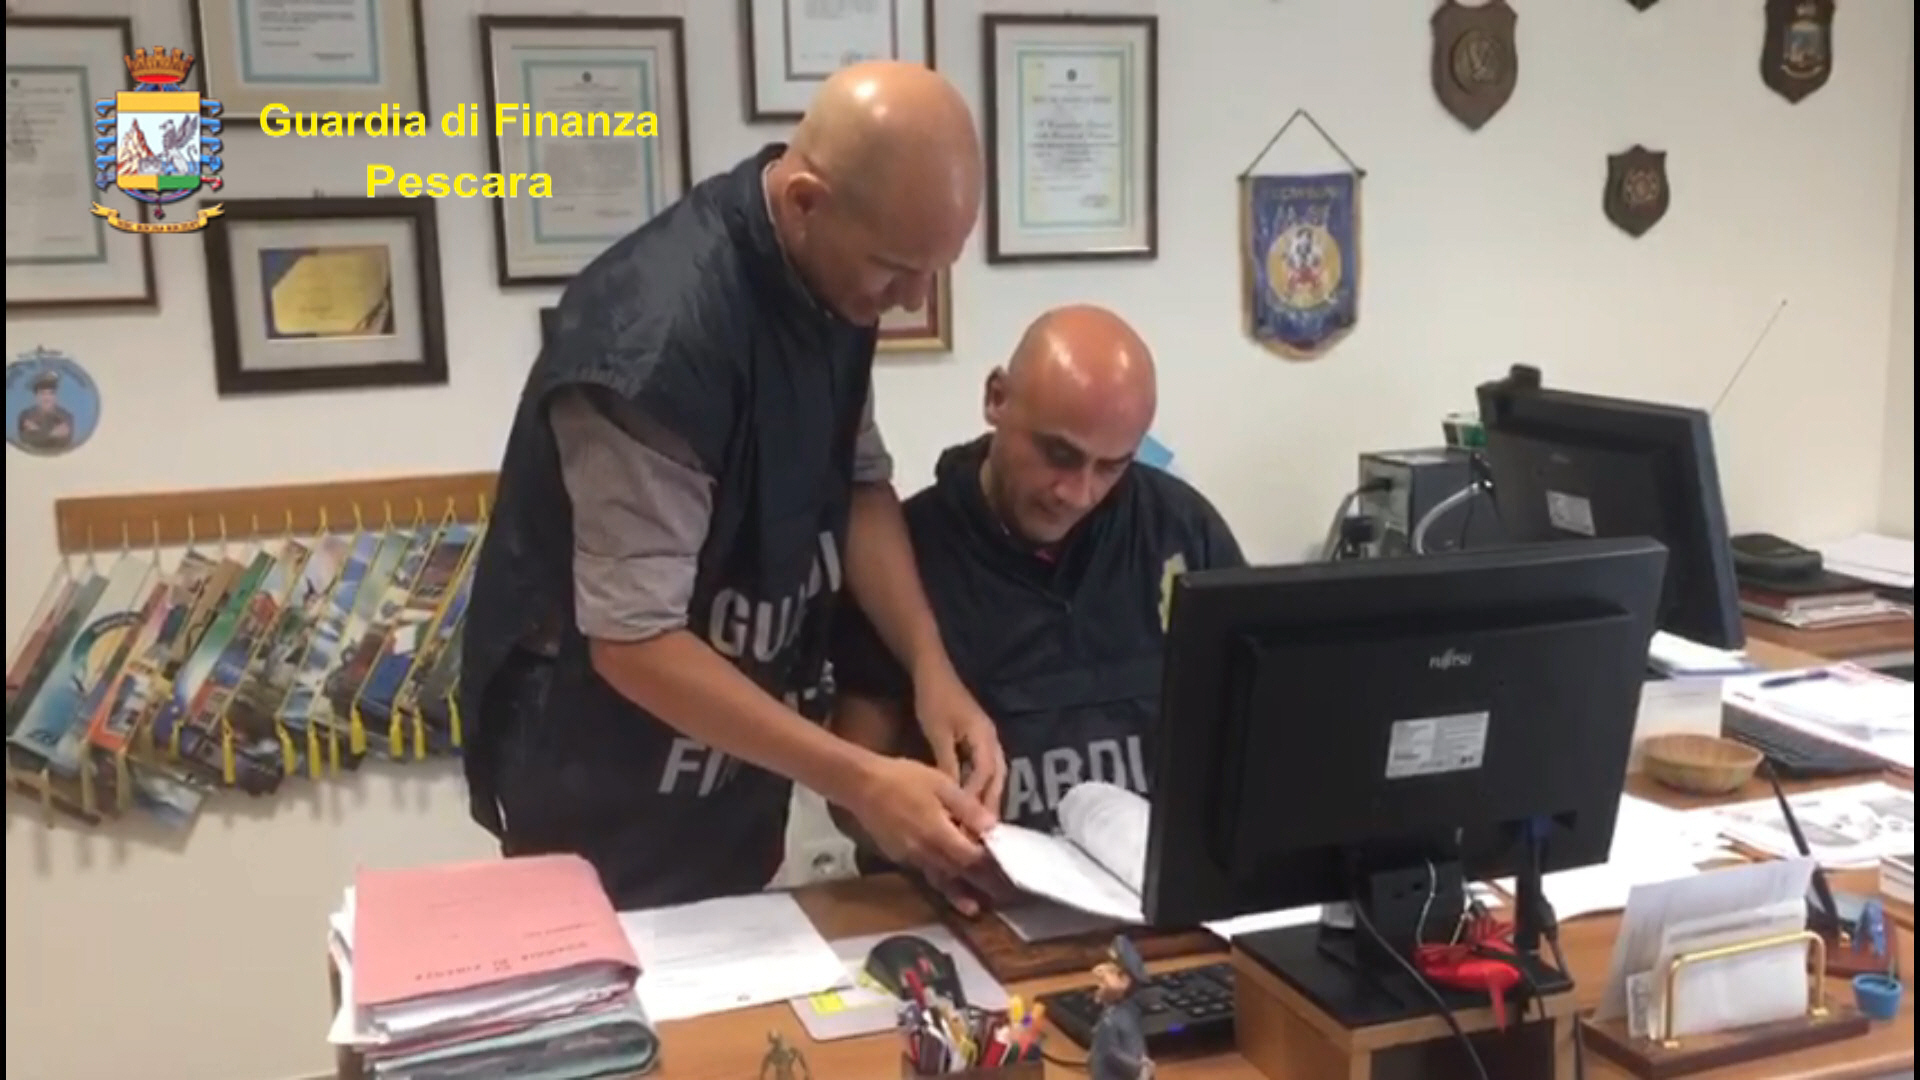 Avvocato di Pescara indagato per peculato, sequestrati beni per 445mila euro